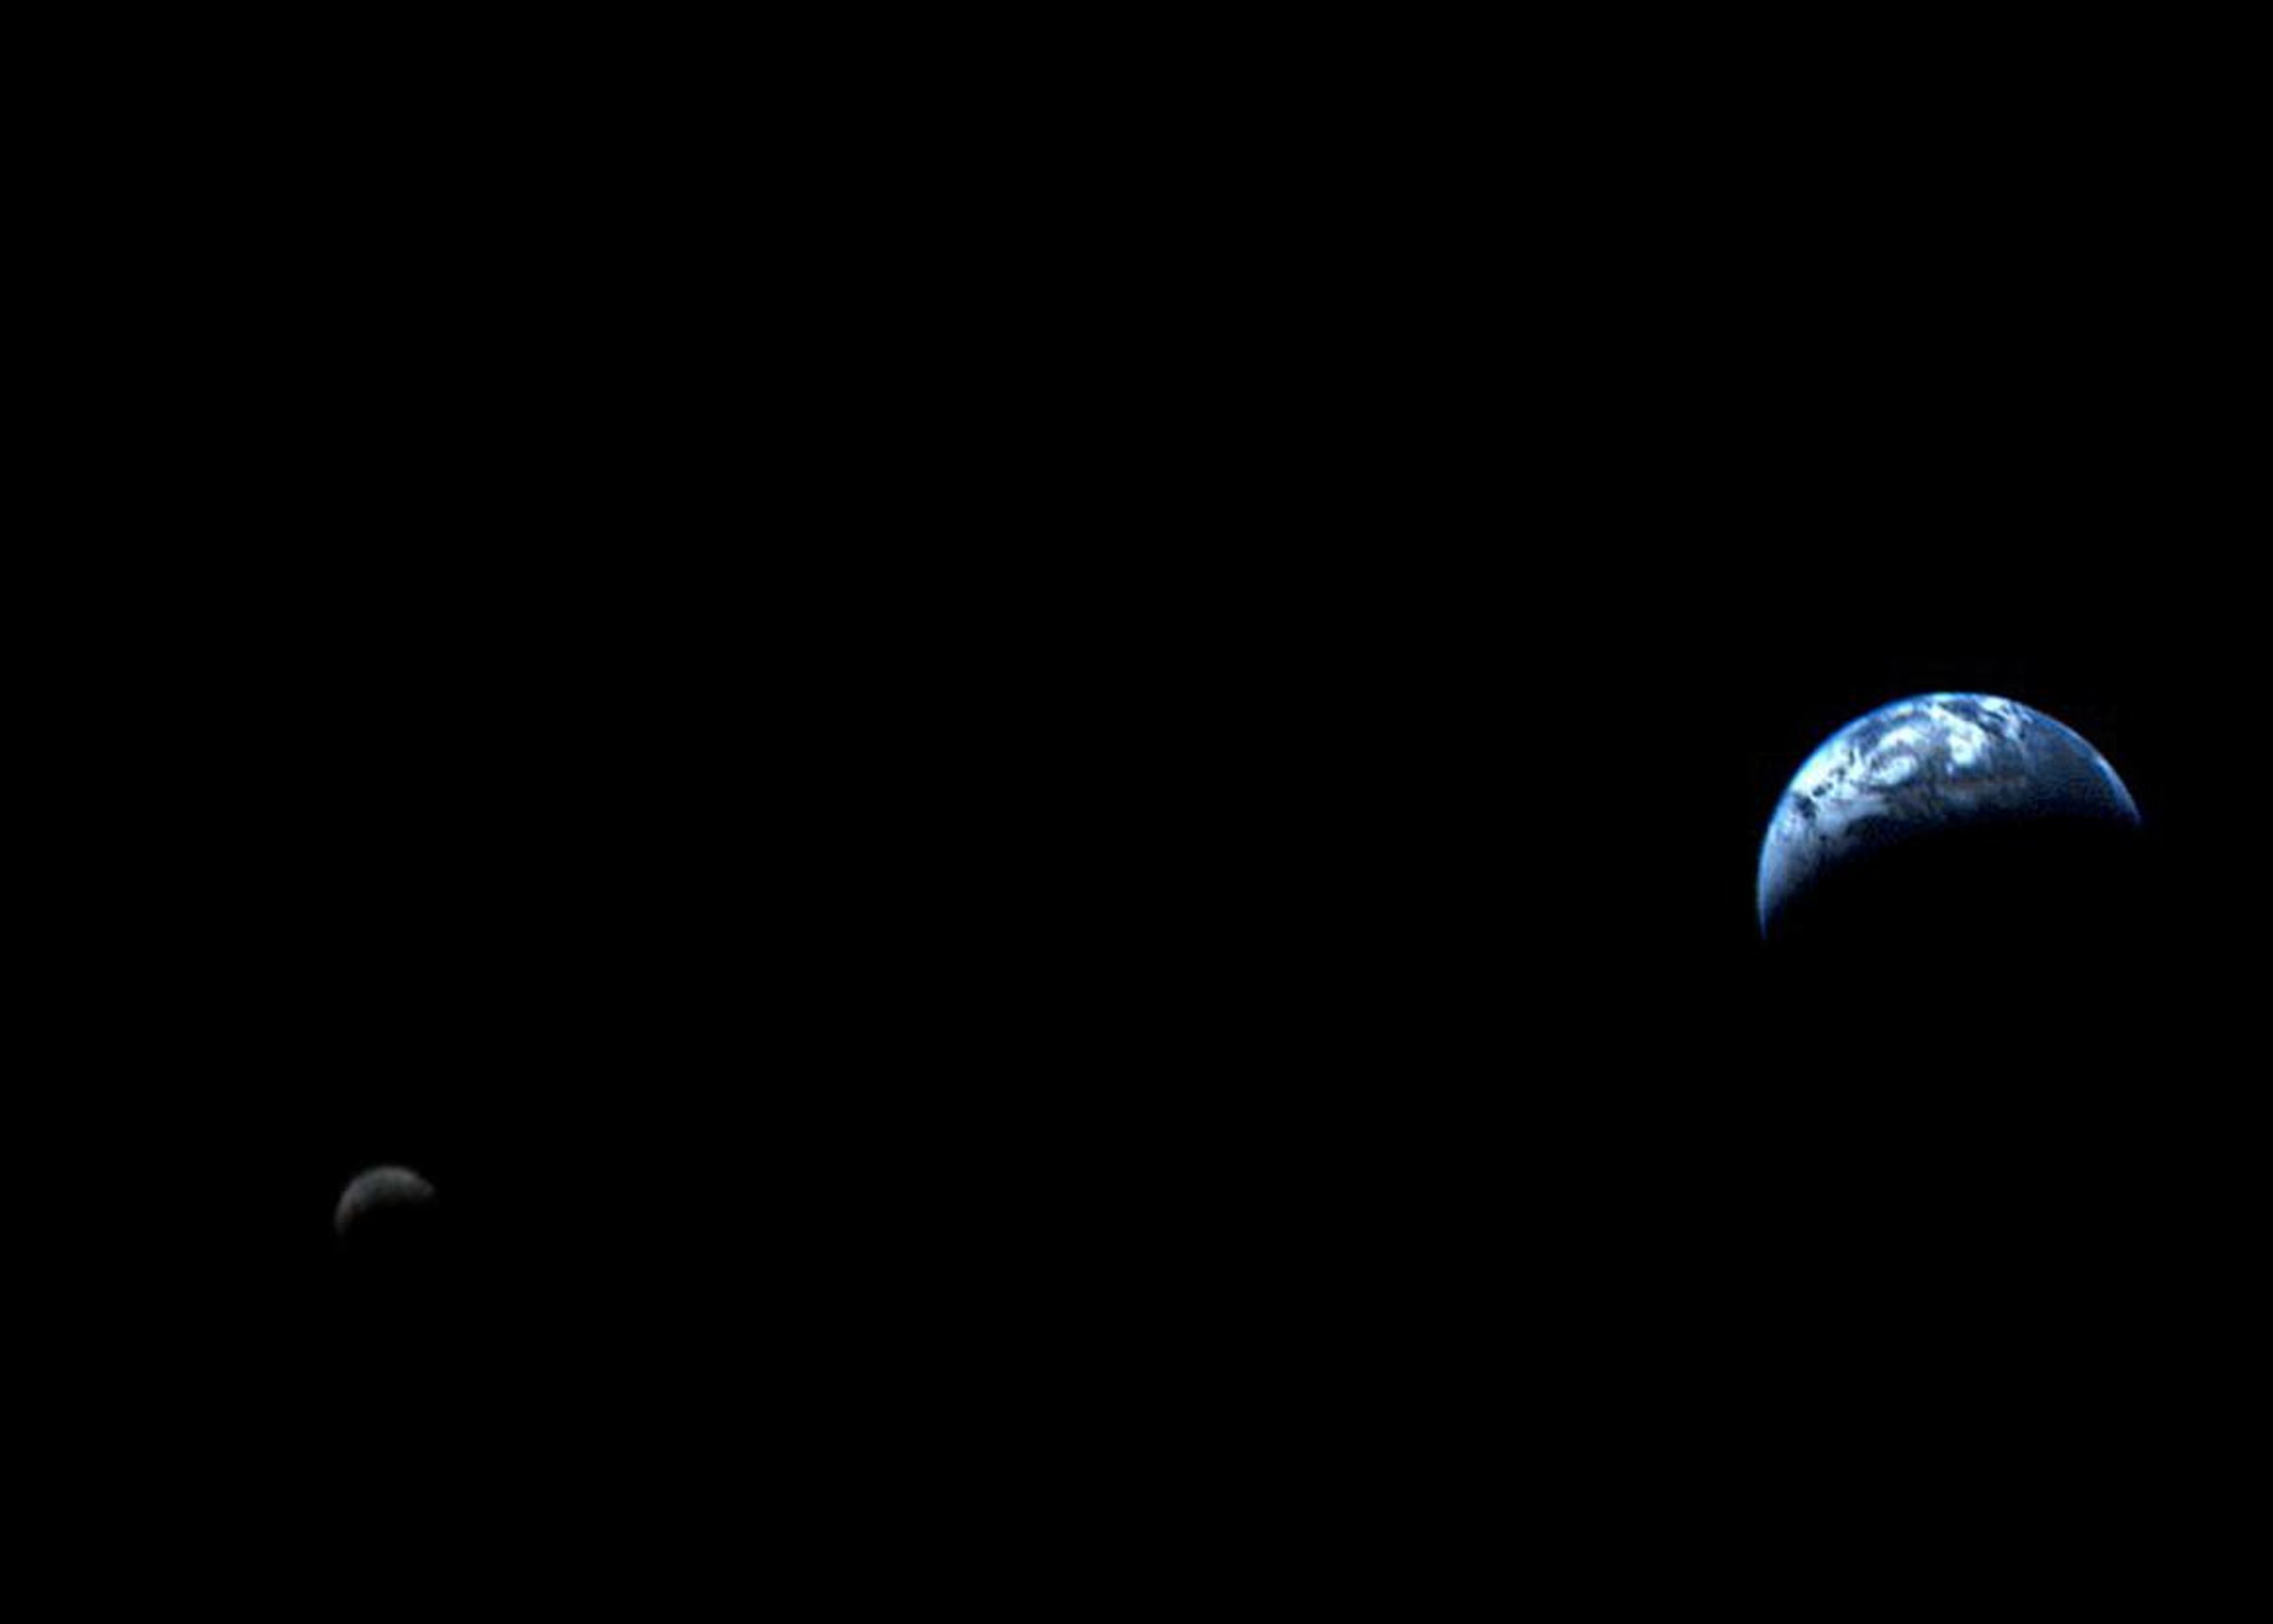 La mayoría de las imágenes no representan con precisión la distancia entre la Tierra y la Luna